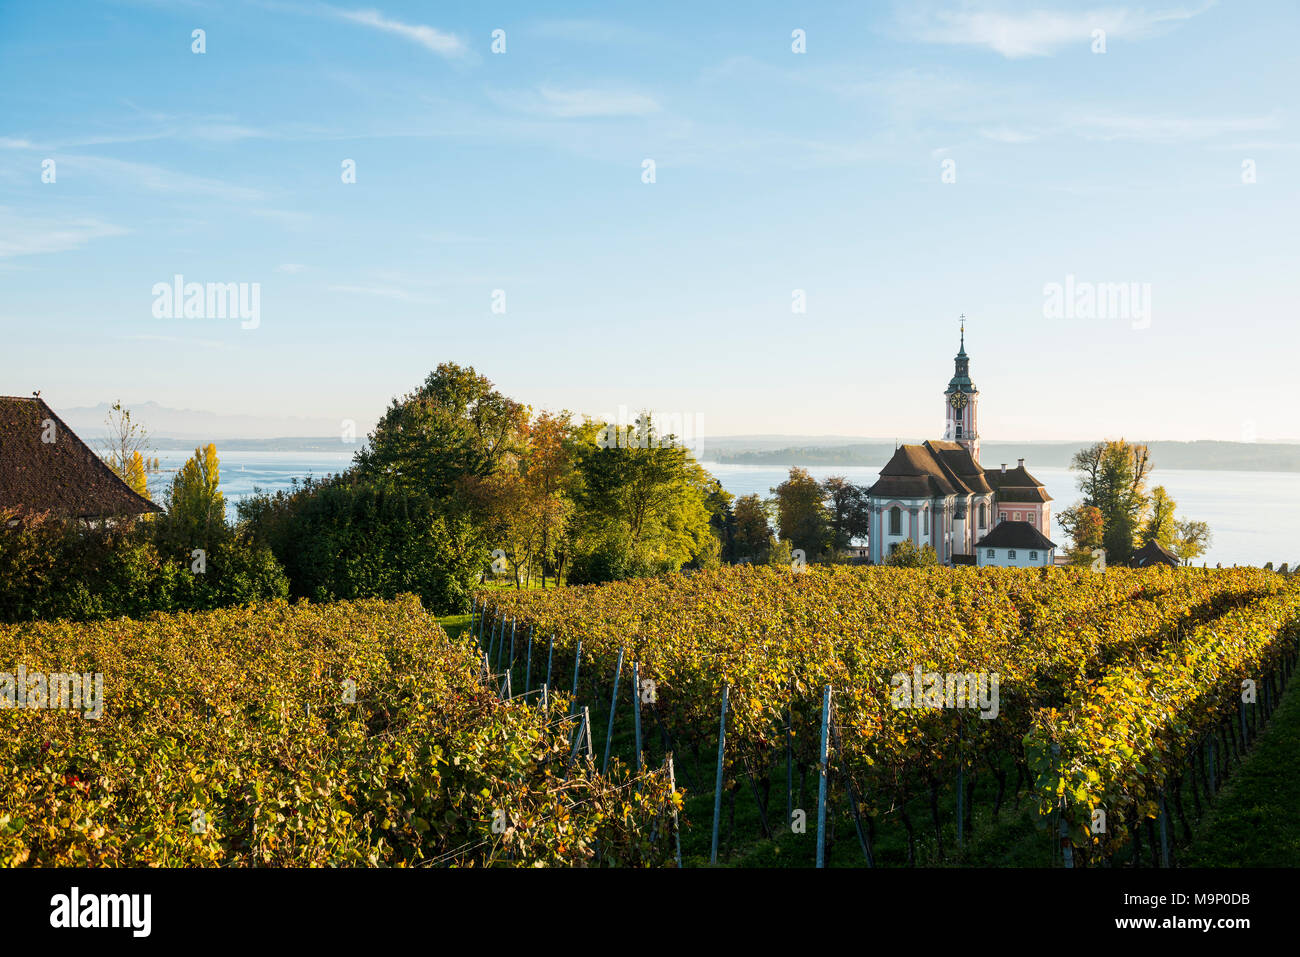 La iglesia de peregrinación Birnau) con viñedos en otoño, luz del atardecer, Uhldingen-Mühlhofen, el lago de Constanza, en el Estado federado de Baden-Württemberg Foto de stock